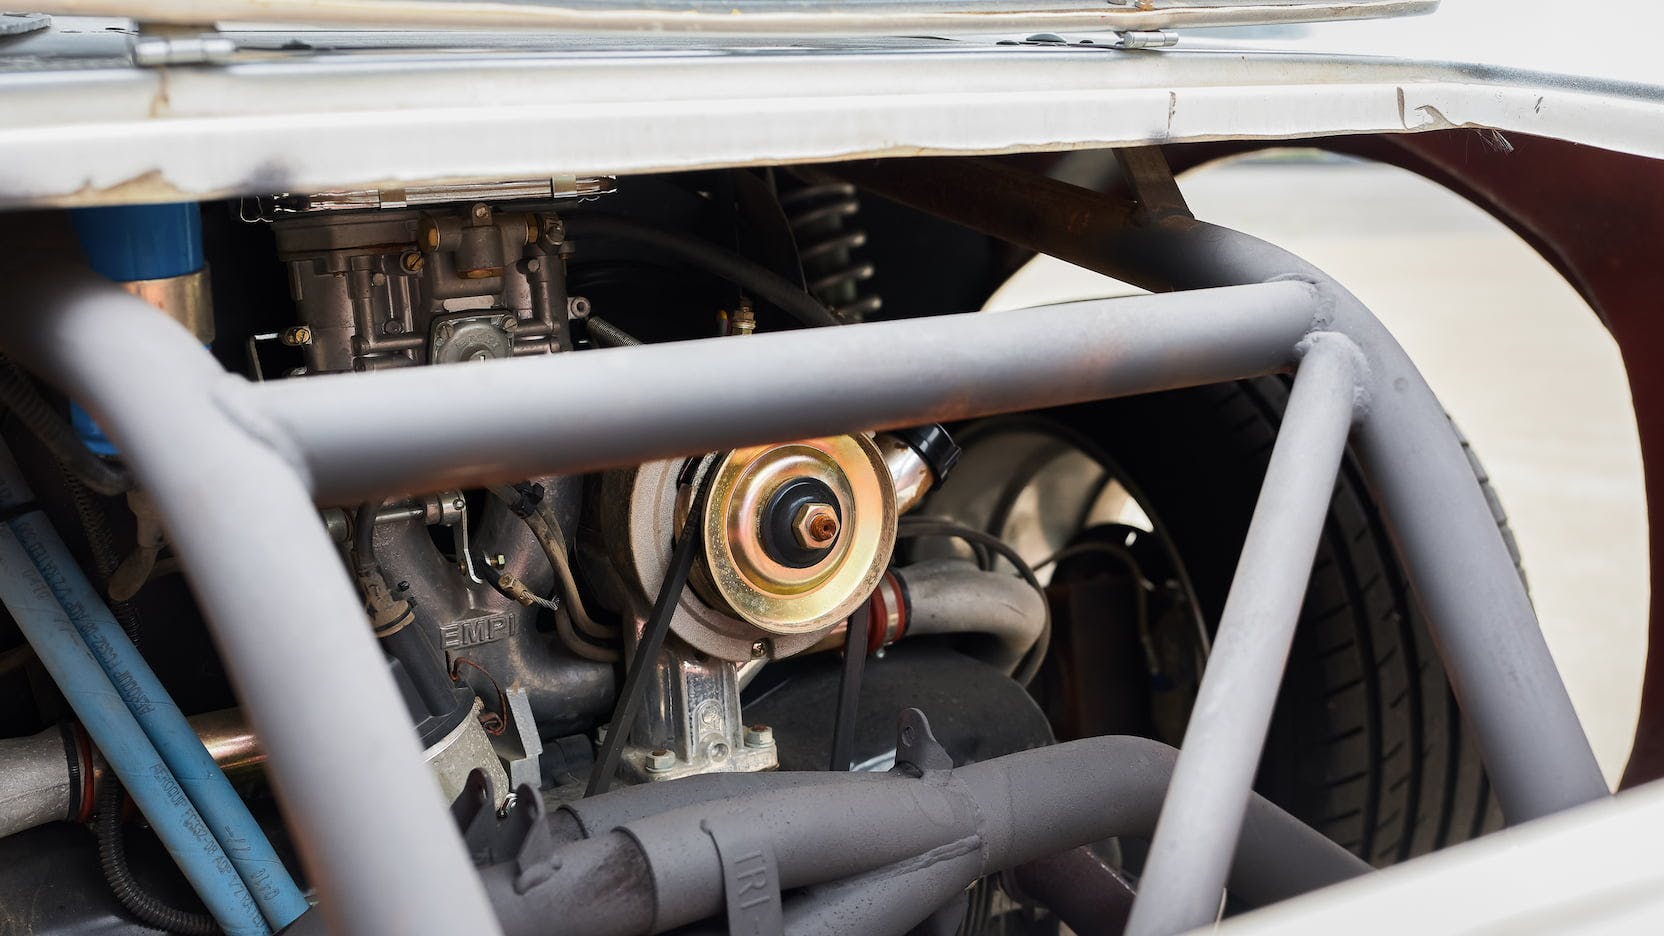 Mecum Fast and Furious 1963 Corvette Grand Sport replica Vw engine